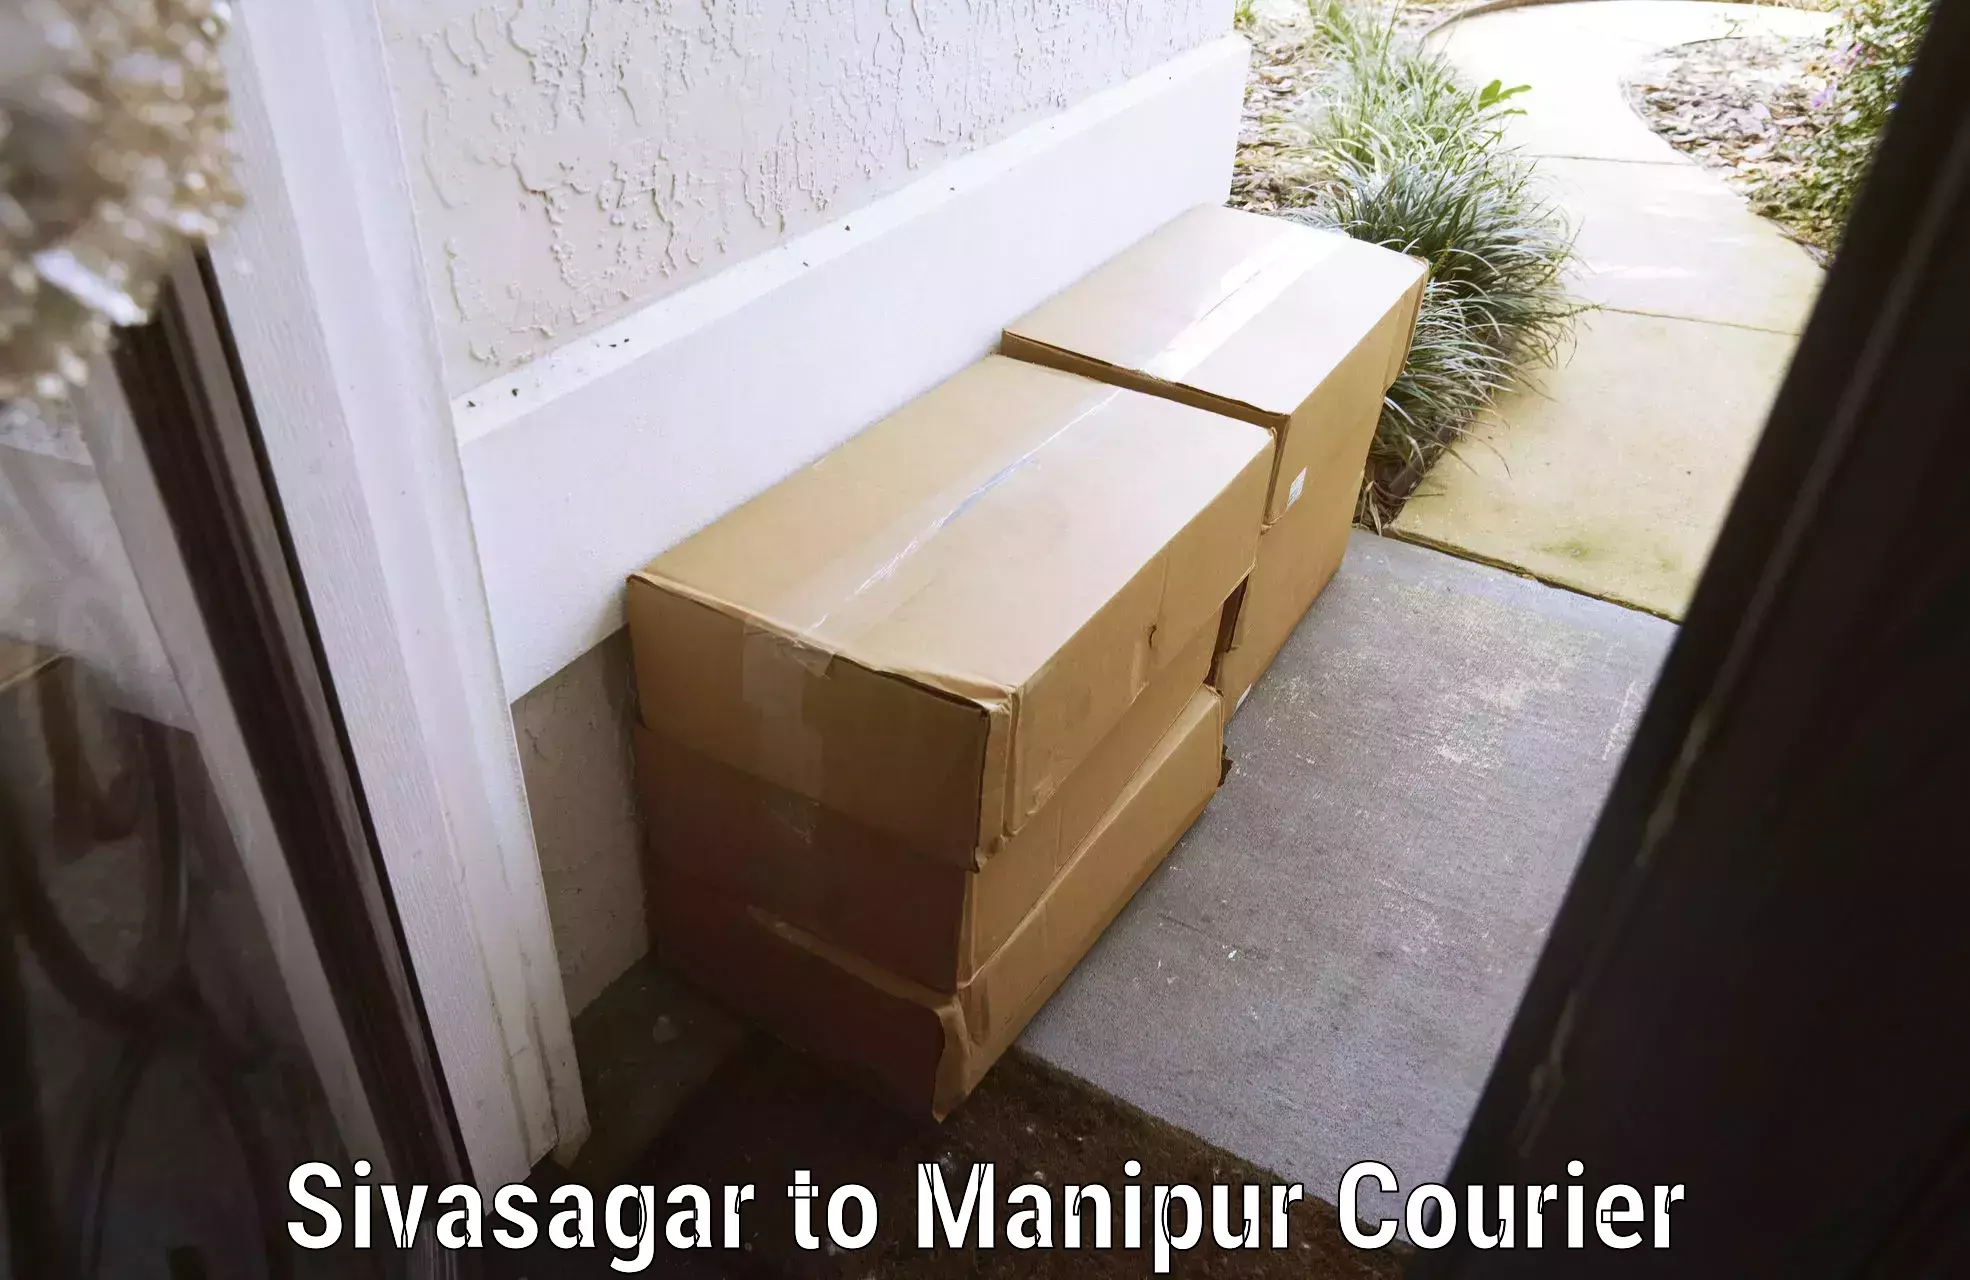 Luggage delivery optimization Sivasagar to Thoubal